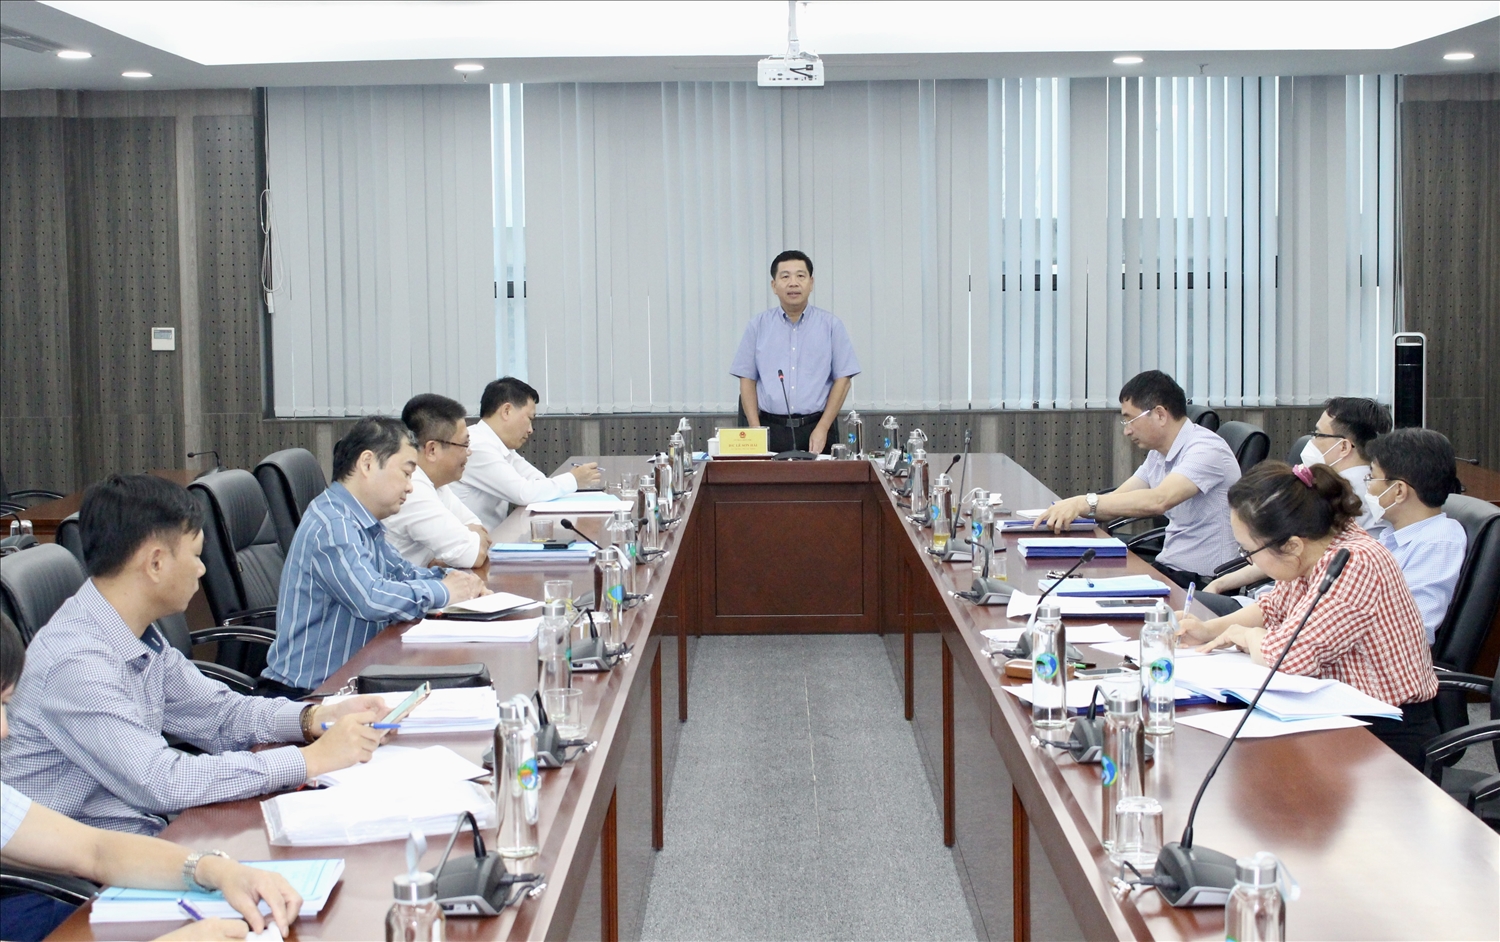 TS. Lê Sơn Hải, Thứ trưởng, Phó Chủ nhiệm, Chủ tịch Hội đồng KH&CN của UBDT chủ trì buổi nghiệm thu đề tài